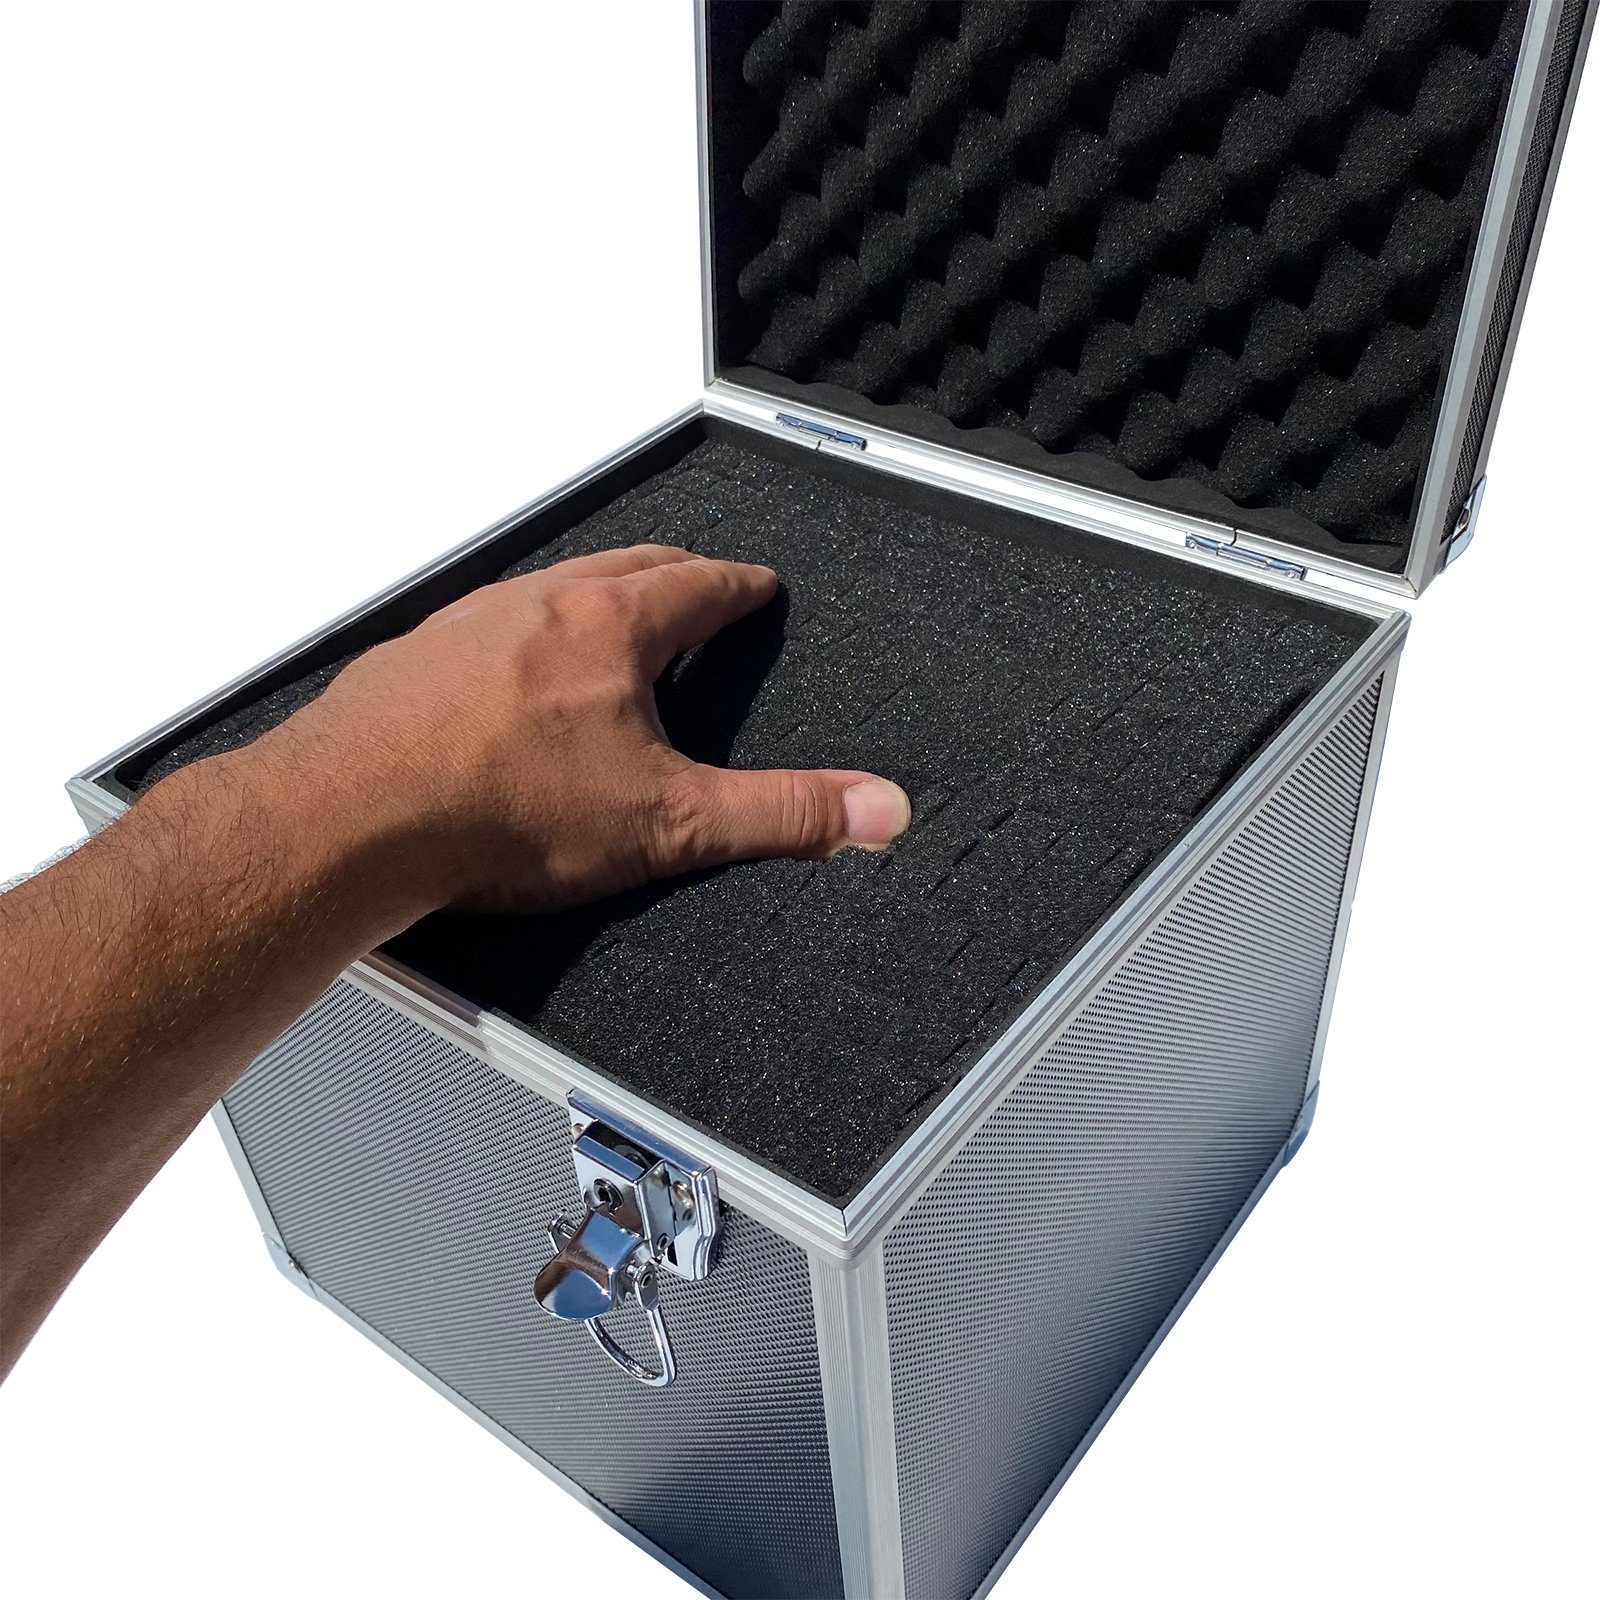 verschi Werkzeugkoffer Tools Alu Werkzeugkoffer Box Würfelform Wahlweise ECI Leer Aluminium Koffer Silber